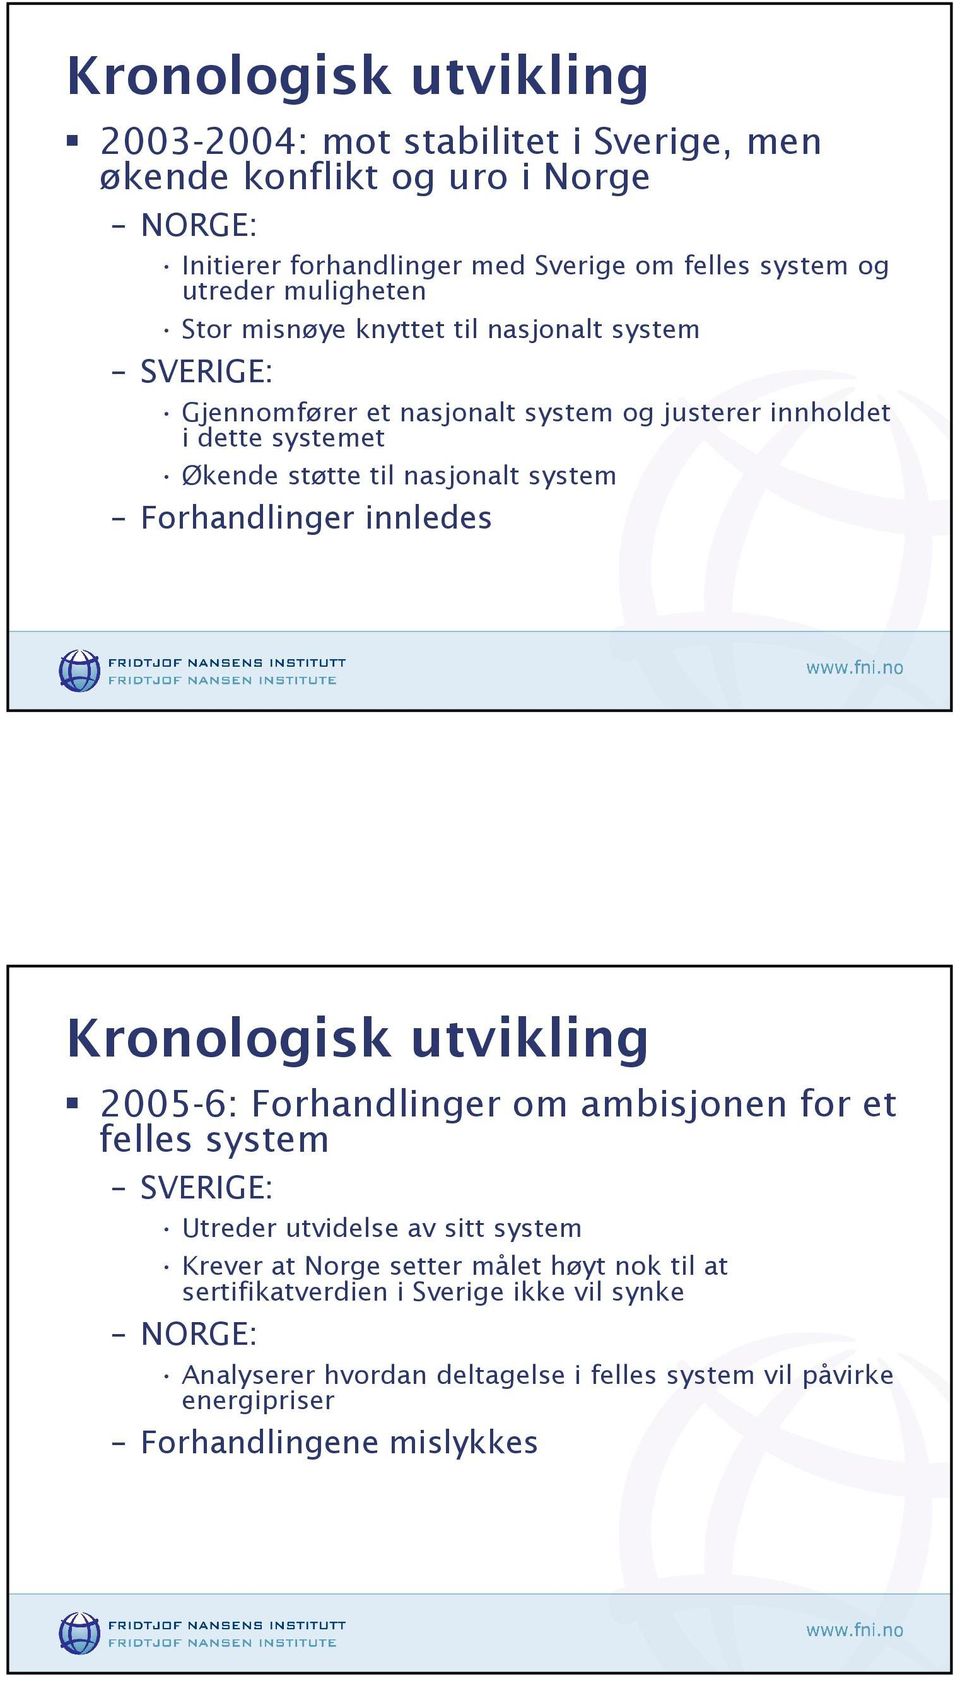 system Forhandlinger innledes Kronologisk utvikling 2005-6: Forhandlinger om ambisjonen for et felles system SVERIGE: Utreder utvidelse av sitt system Krever at Norge